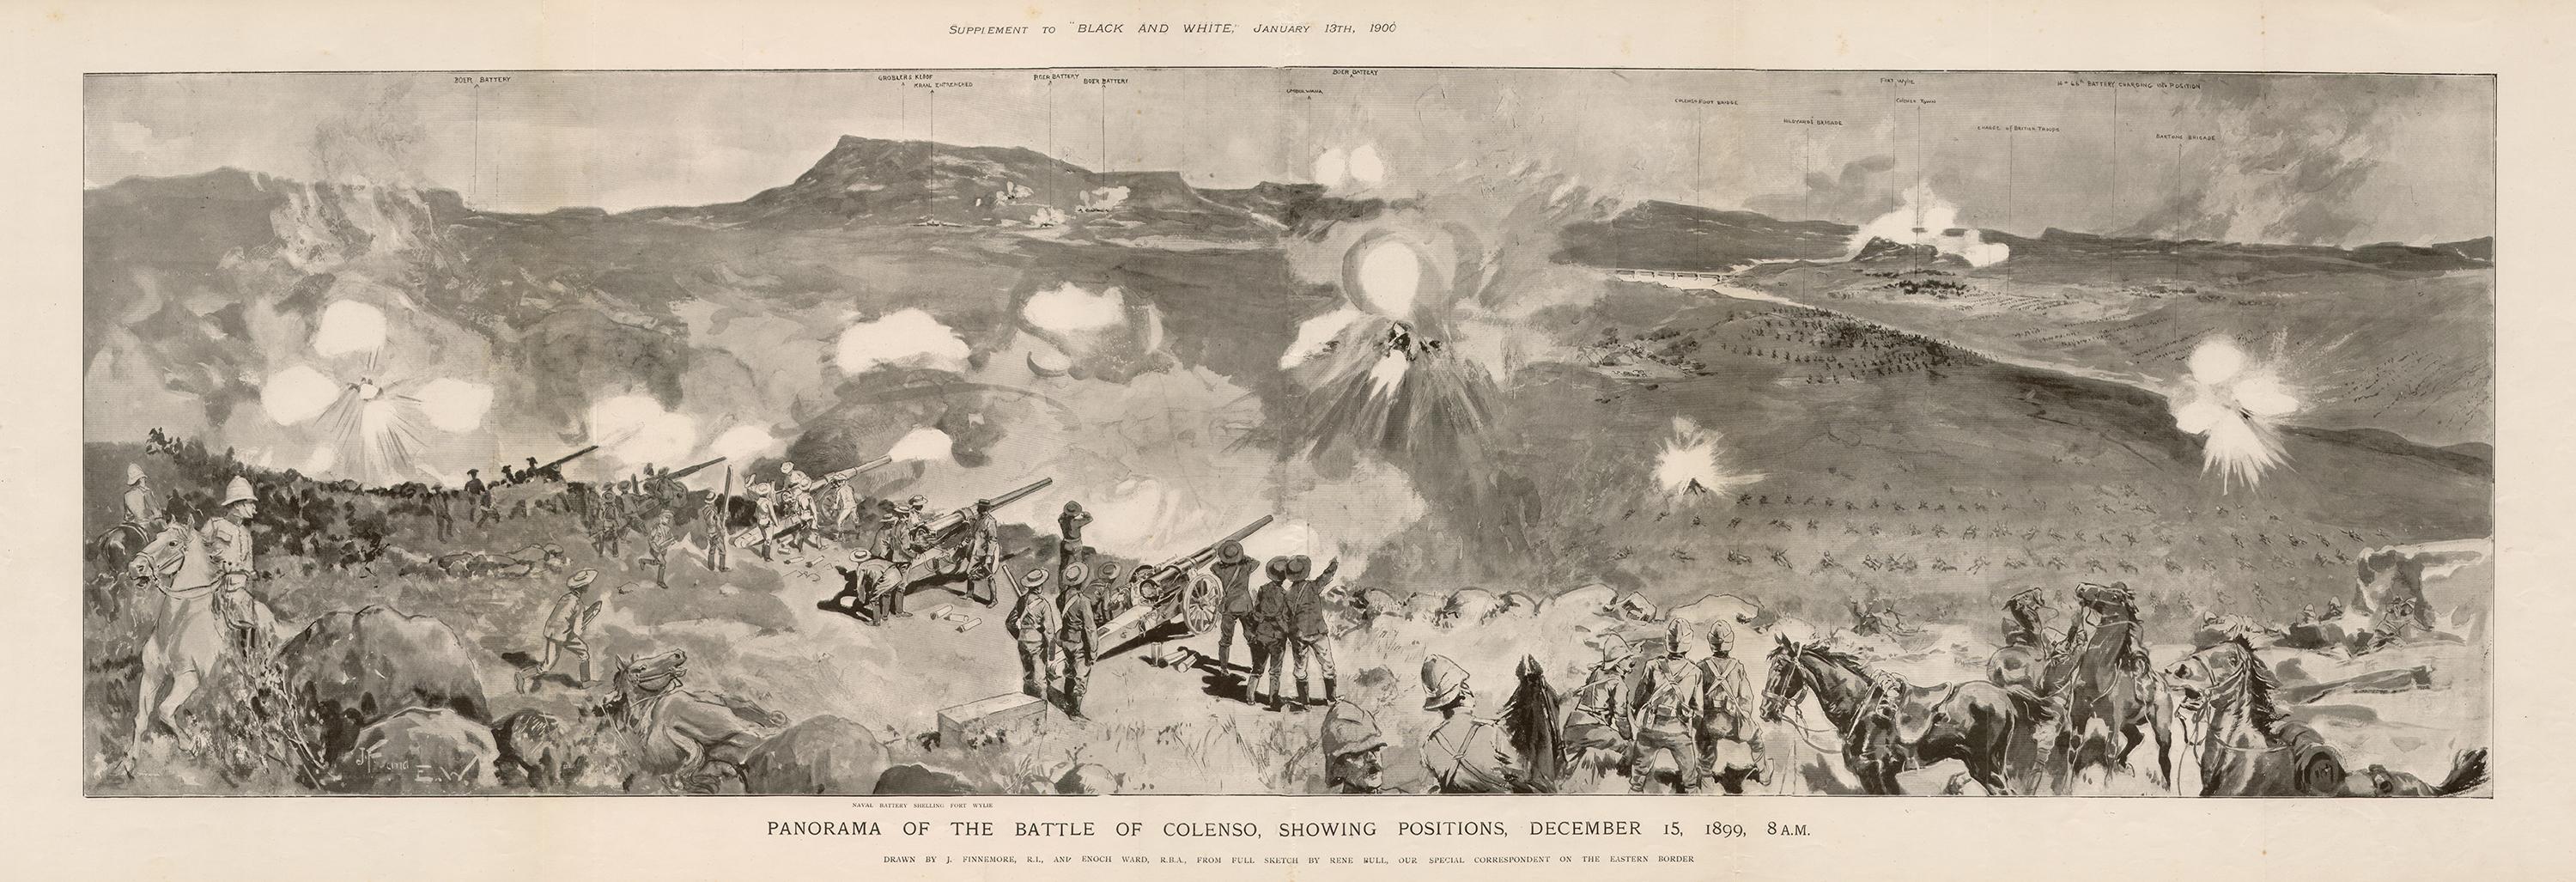 Rene Bull Figurative Print – Boer War - Panorama der Schlacht von Colenso, Fotogravur einer militärischen Armee